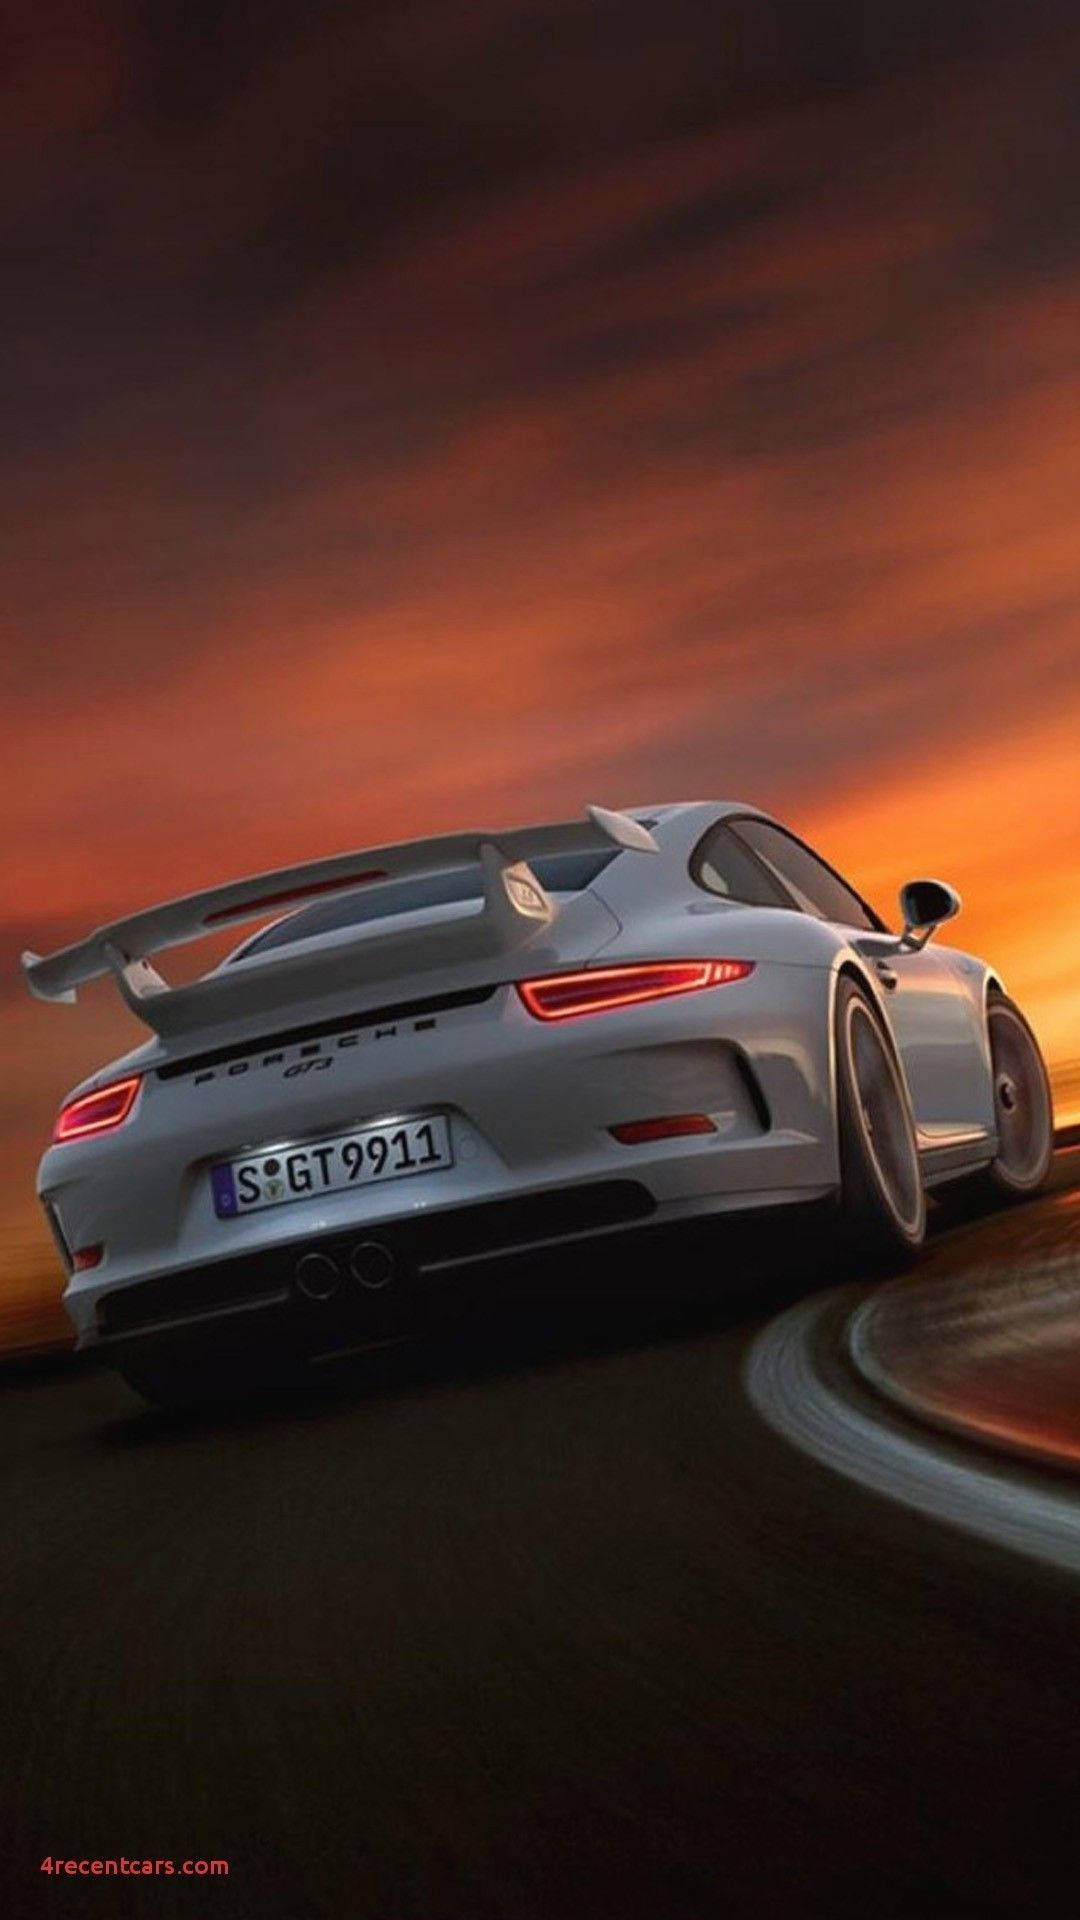 Cùng trải nghiệm cảm giác tốc độ đỉnh cao với mẫu xe Porsche 911 GT3 huyền thoại. Xe được thiết kế bắt mắt, động cơ vô cùng mạnh mẽ và đầy cảm xúc sẽ mang đến cho bạn một trải nghiệm đáng nhớ.